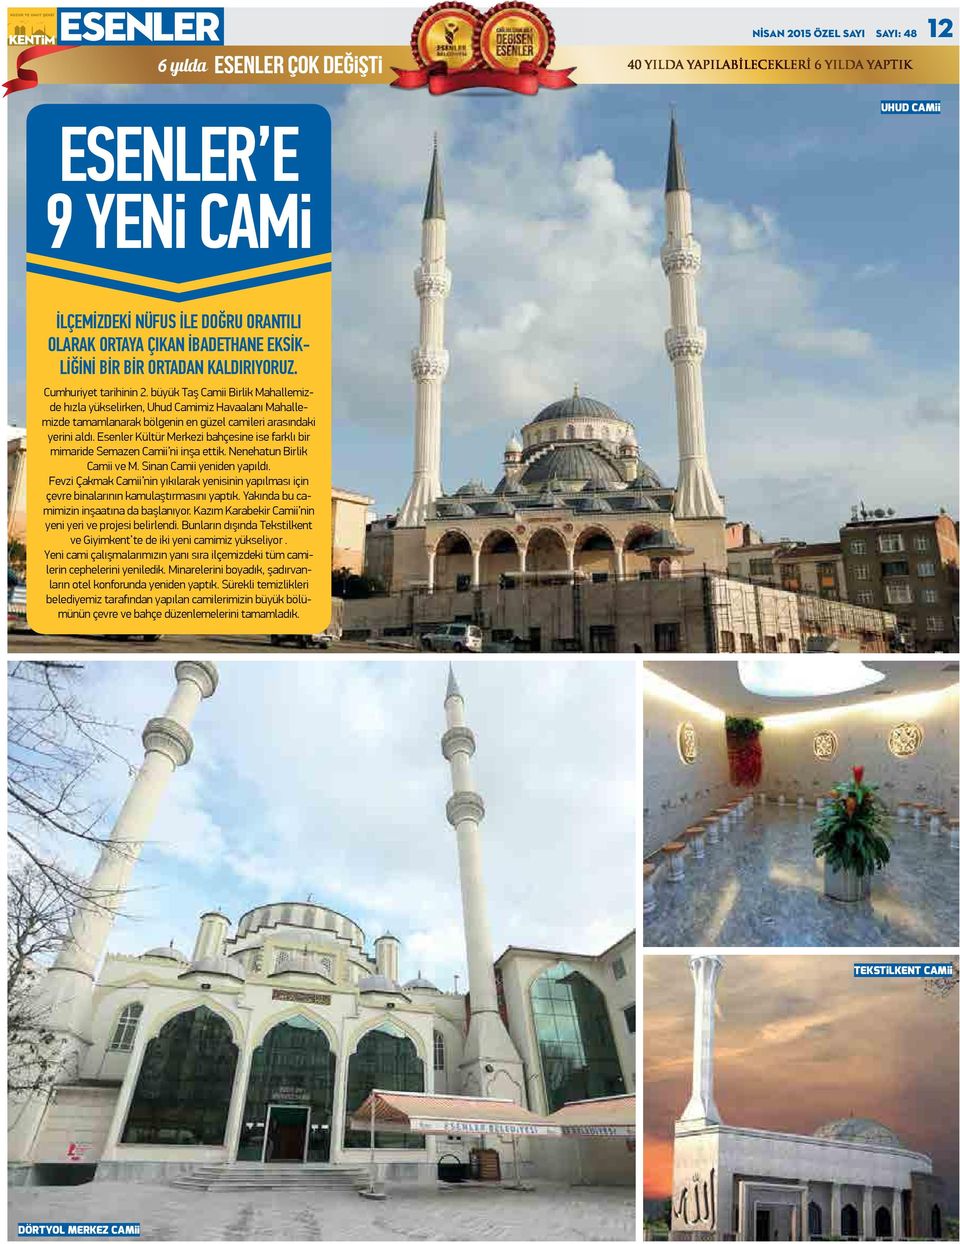 Esenler Kültür Merkezi bahçesine ise farklı bir mimaride Semazen Camii ni inşa ettik. Nenehatun Birlik Camii ve M. Sinan Camii yeniden yapıldı.